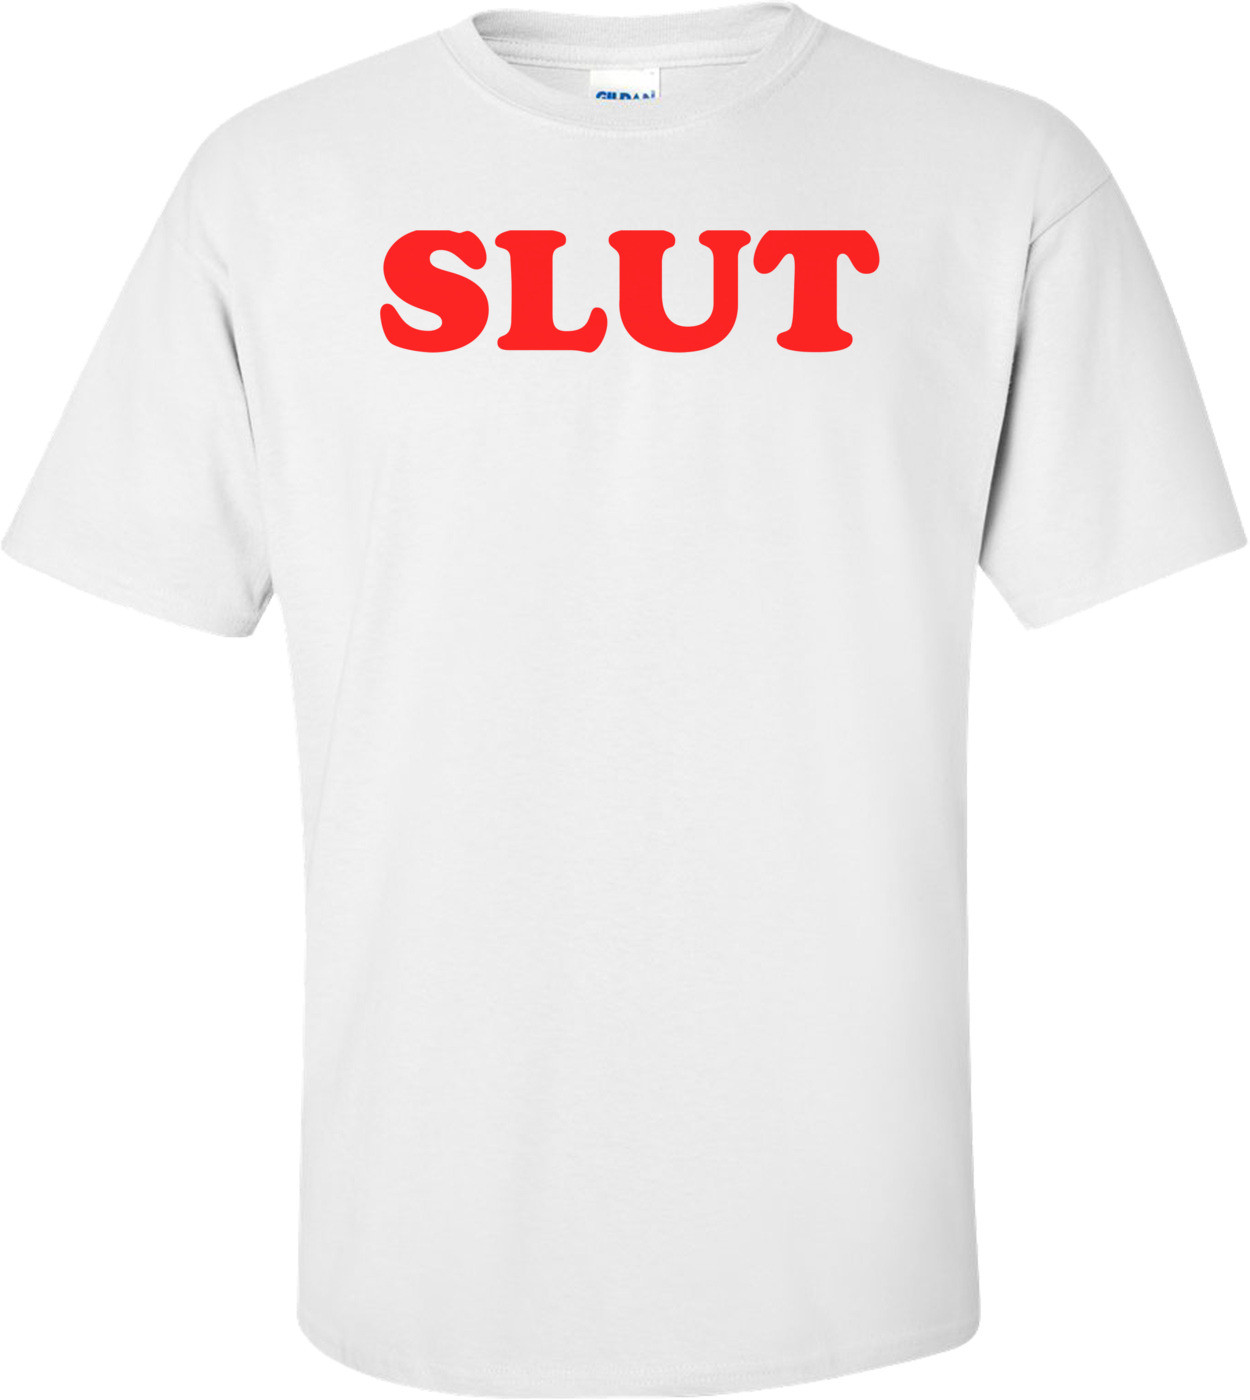 SLUT Shirt